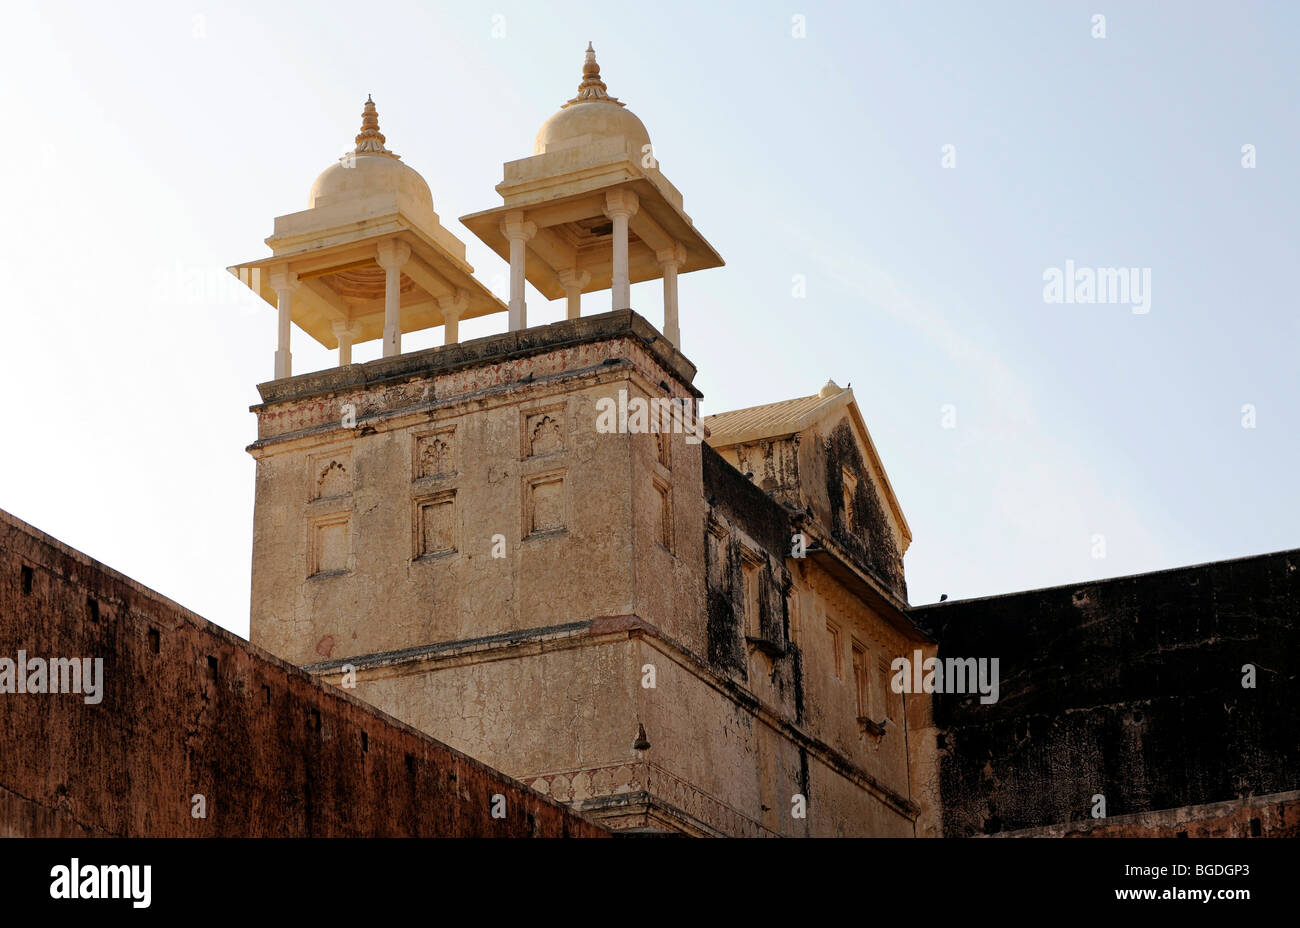 Amber Palace, détail, ambre, près de Jaipur, Rajasthan, Inde du Nord, Inde, Asie du Sud, Asie Banque D'Images